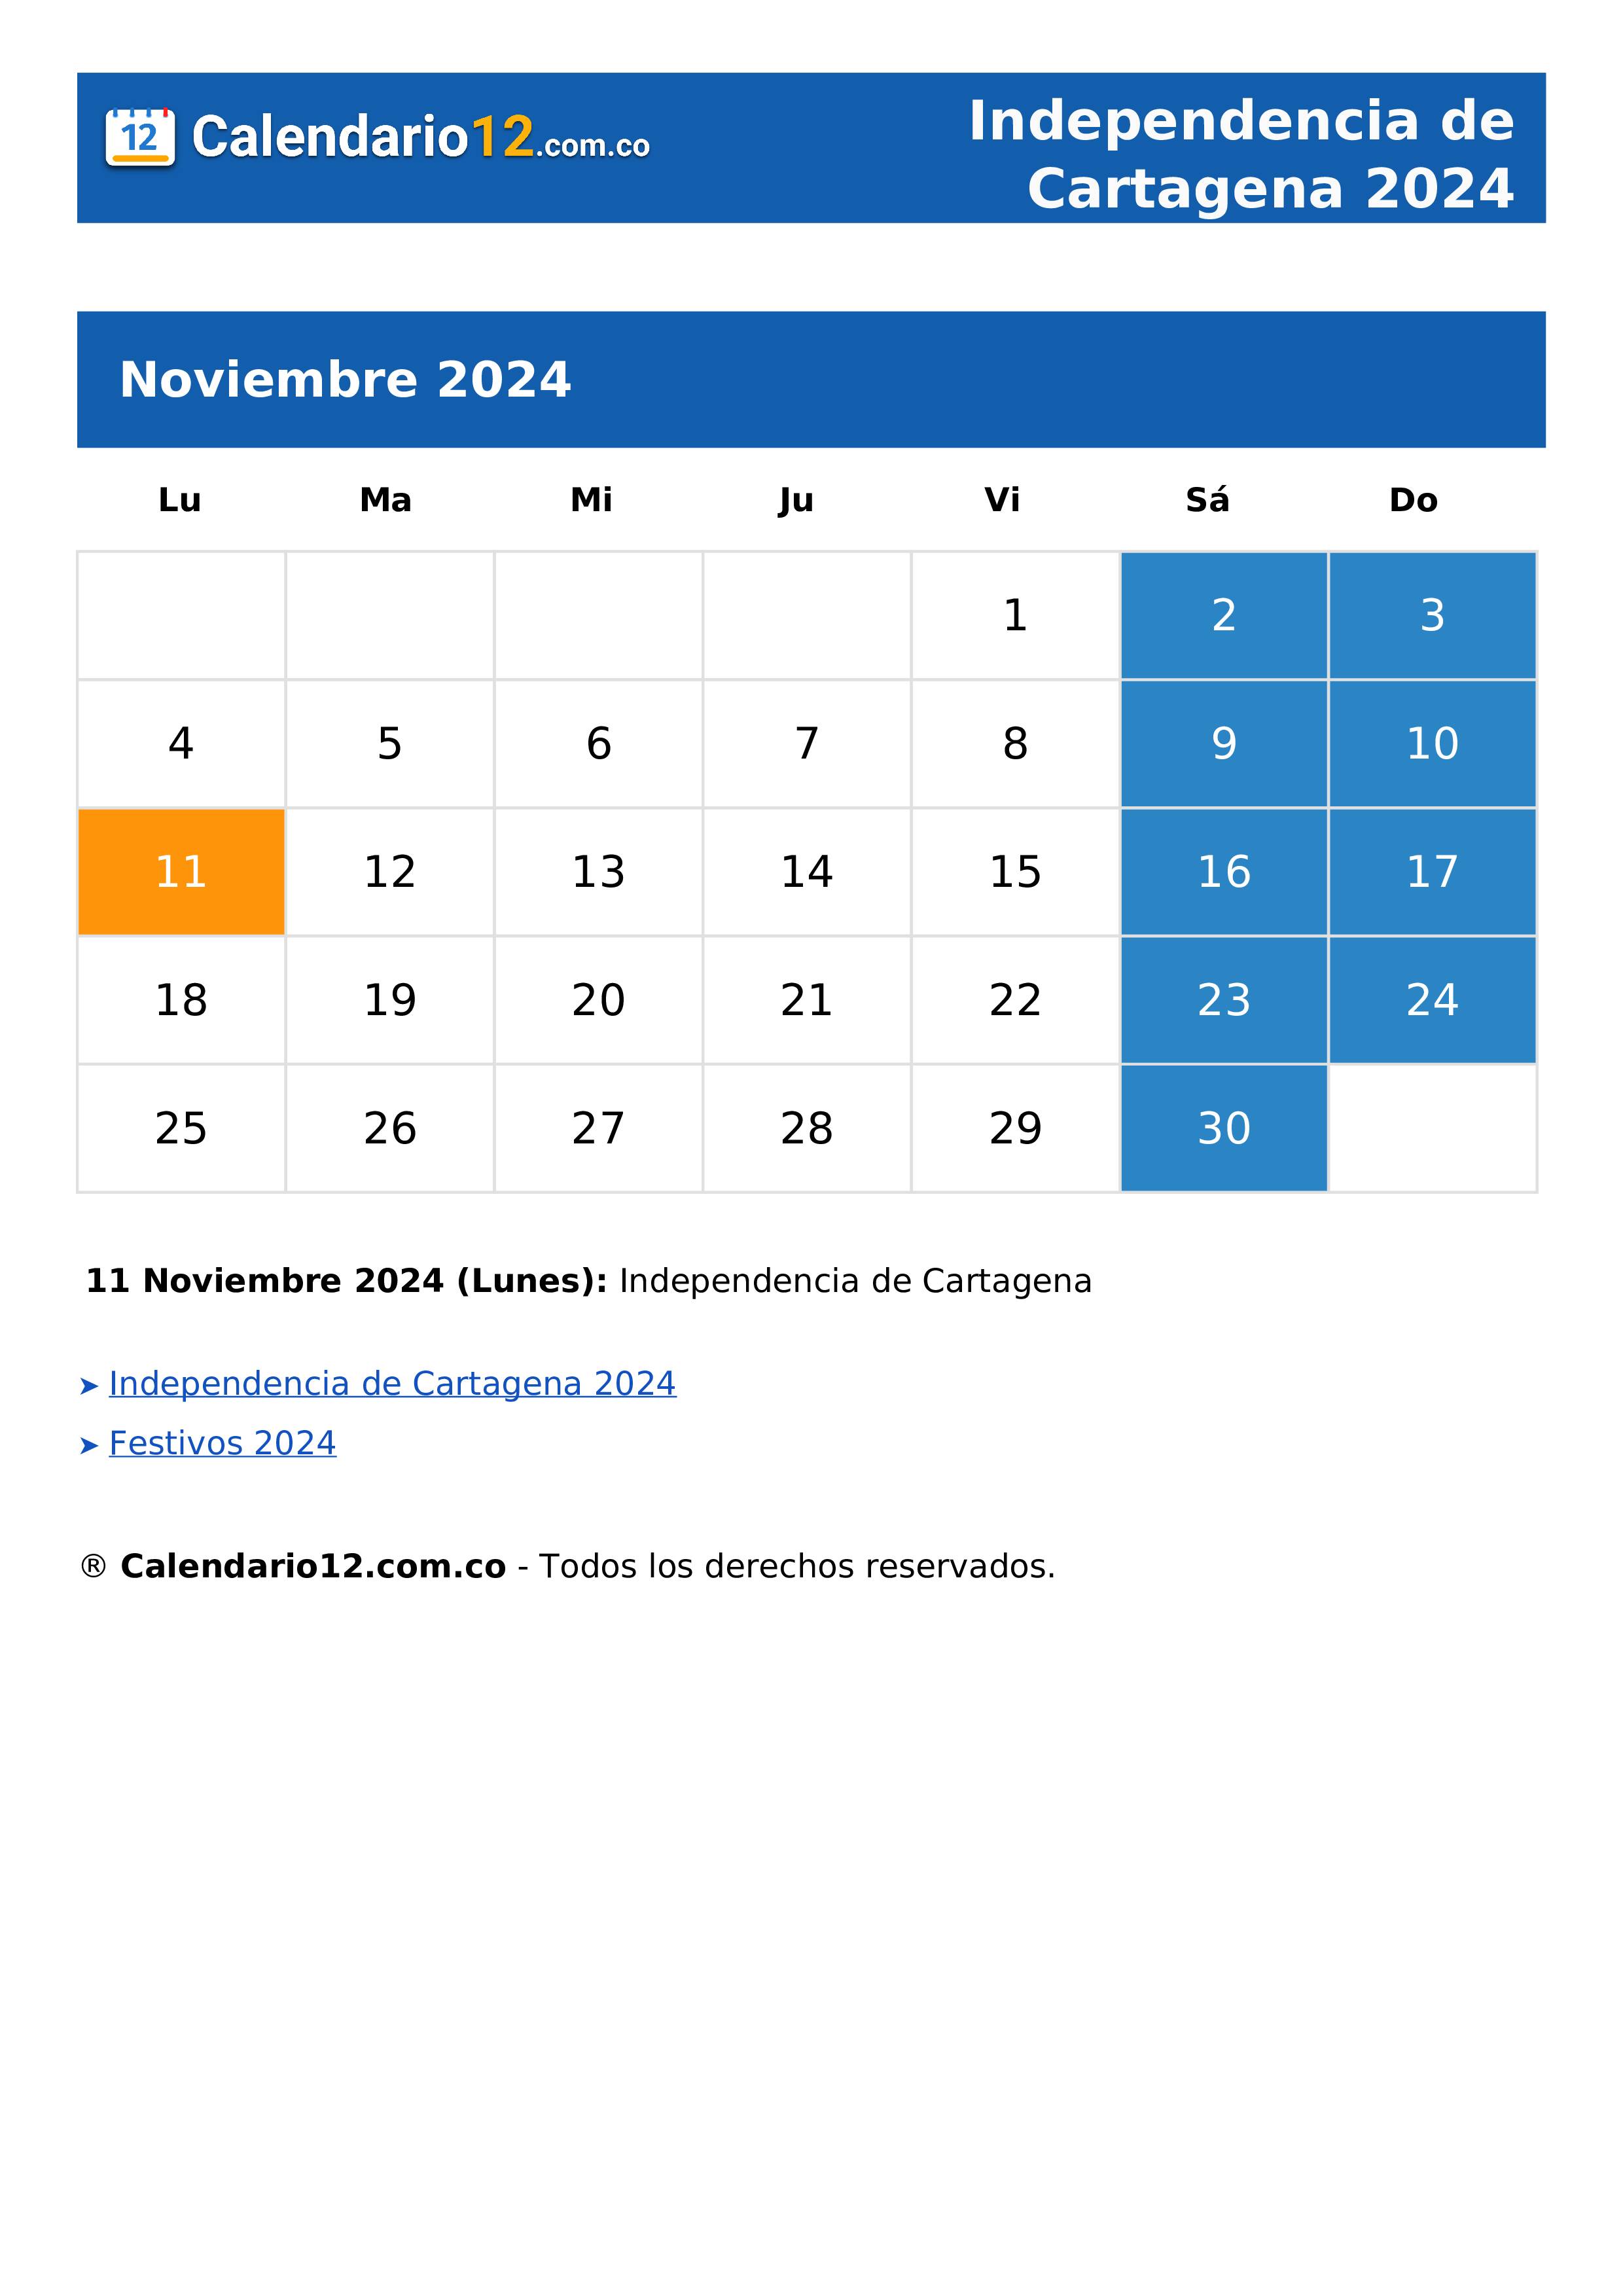 Independencia de Cartagena 2024